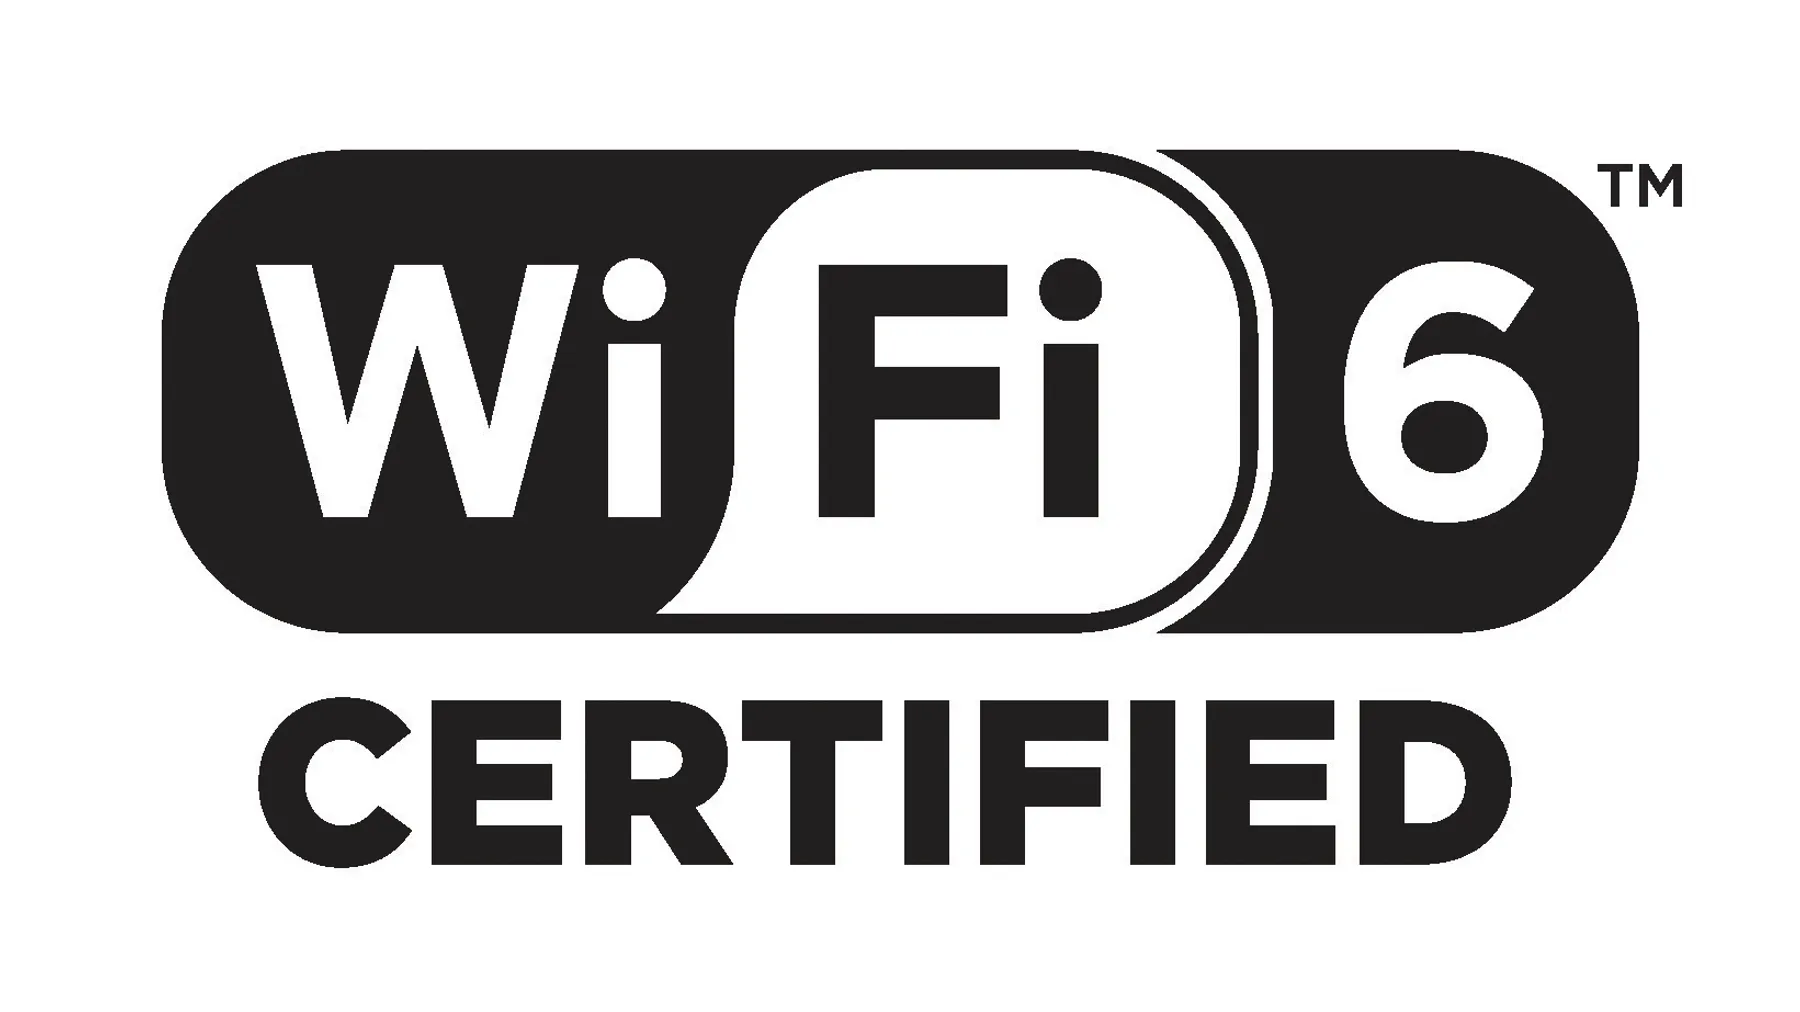 Standard Wi-Fi 6 je a o 37 % rychlej ne pedchoz generace Wi-Fi 5.